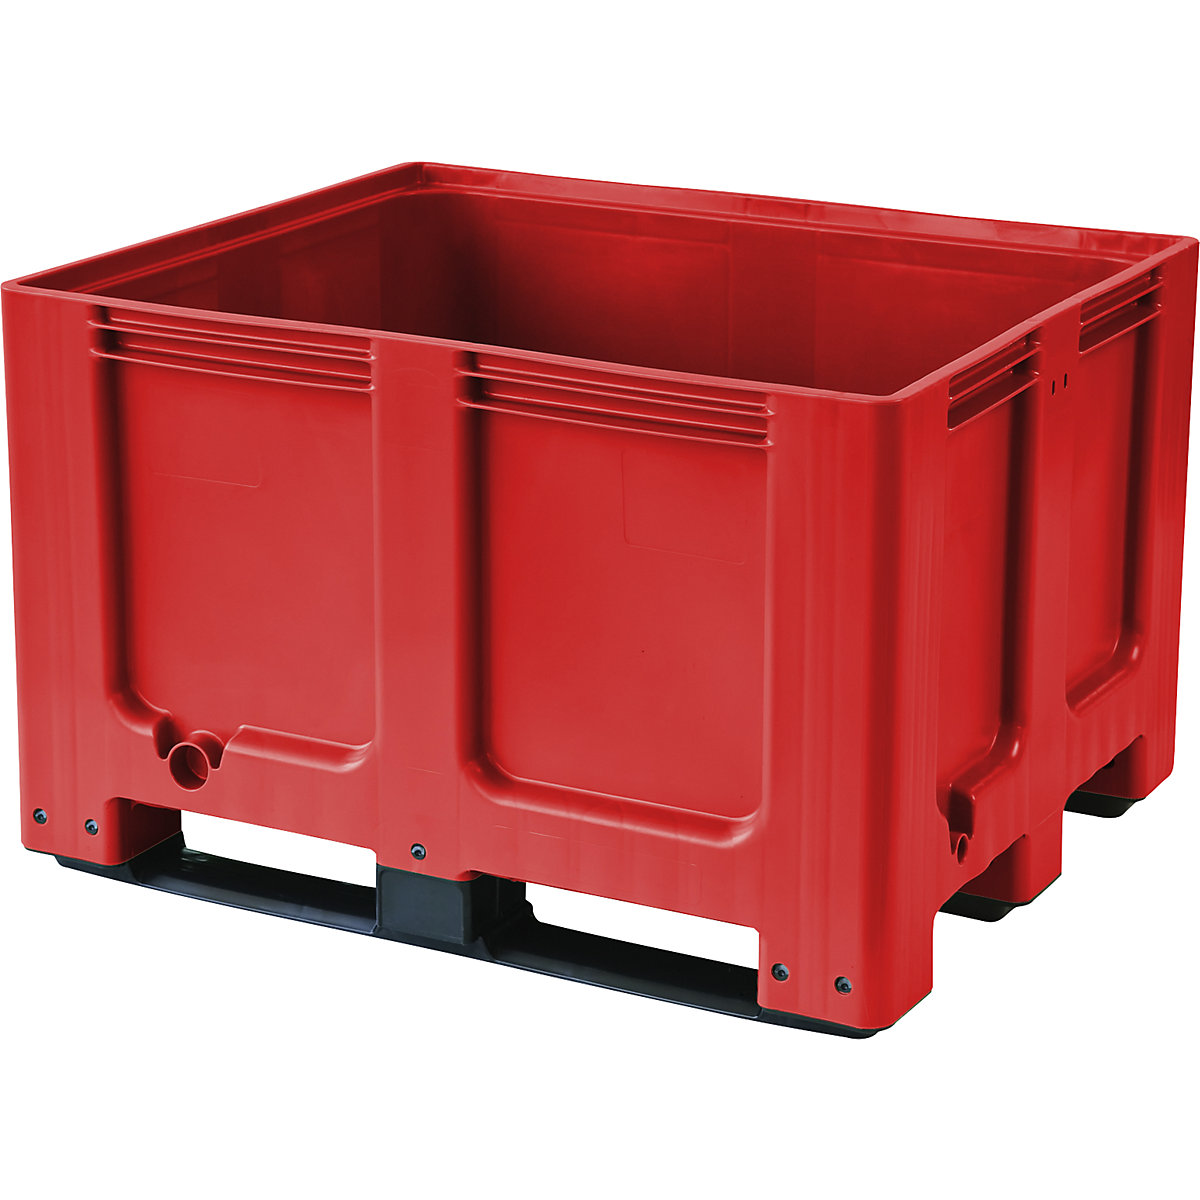 Palletcontainer, van HDPE, l x b x h = 1200 x 1000 x 790 mm, 3 lopers, gesloten, rood-13